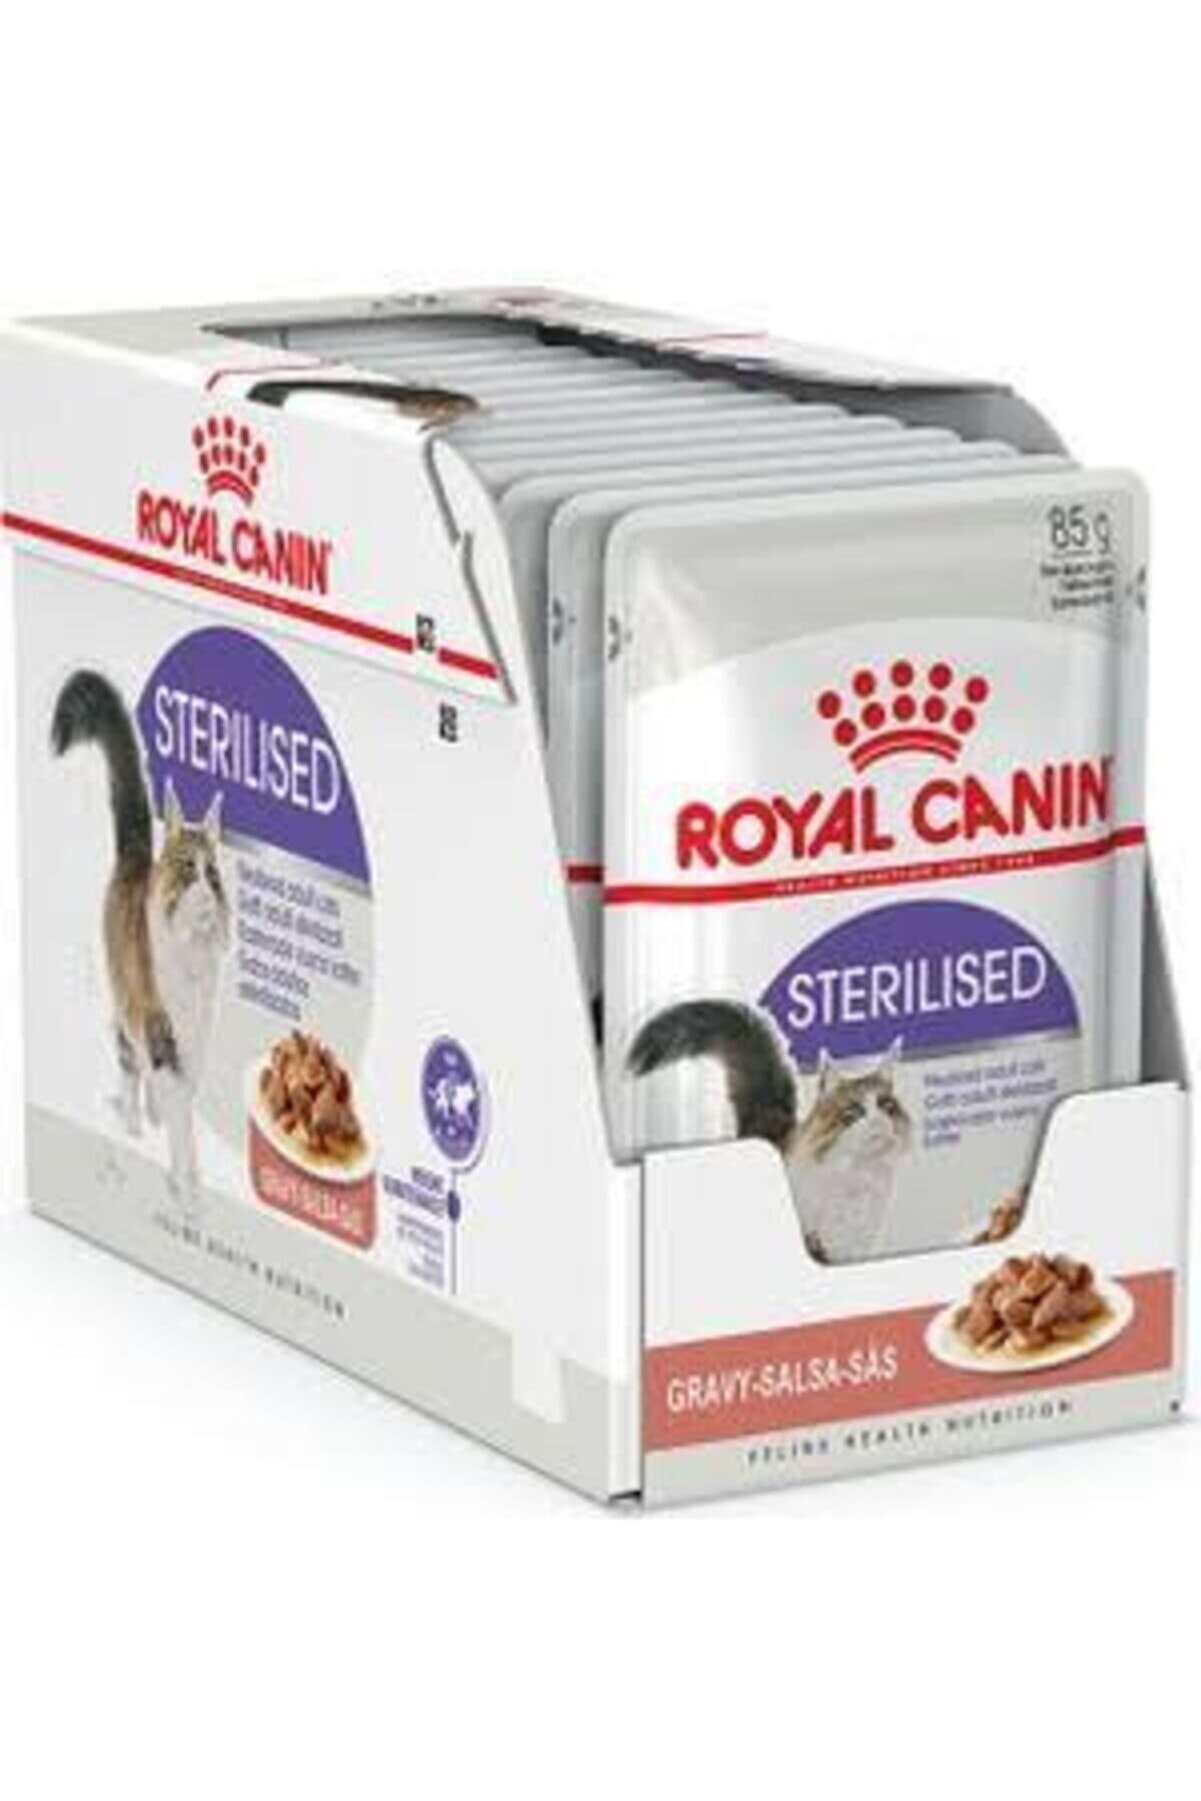 Royal Canin Royal Canın Sterılısed Gravy - Salsa - Sas